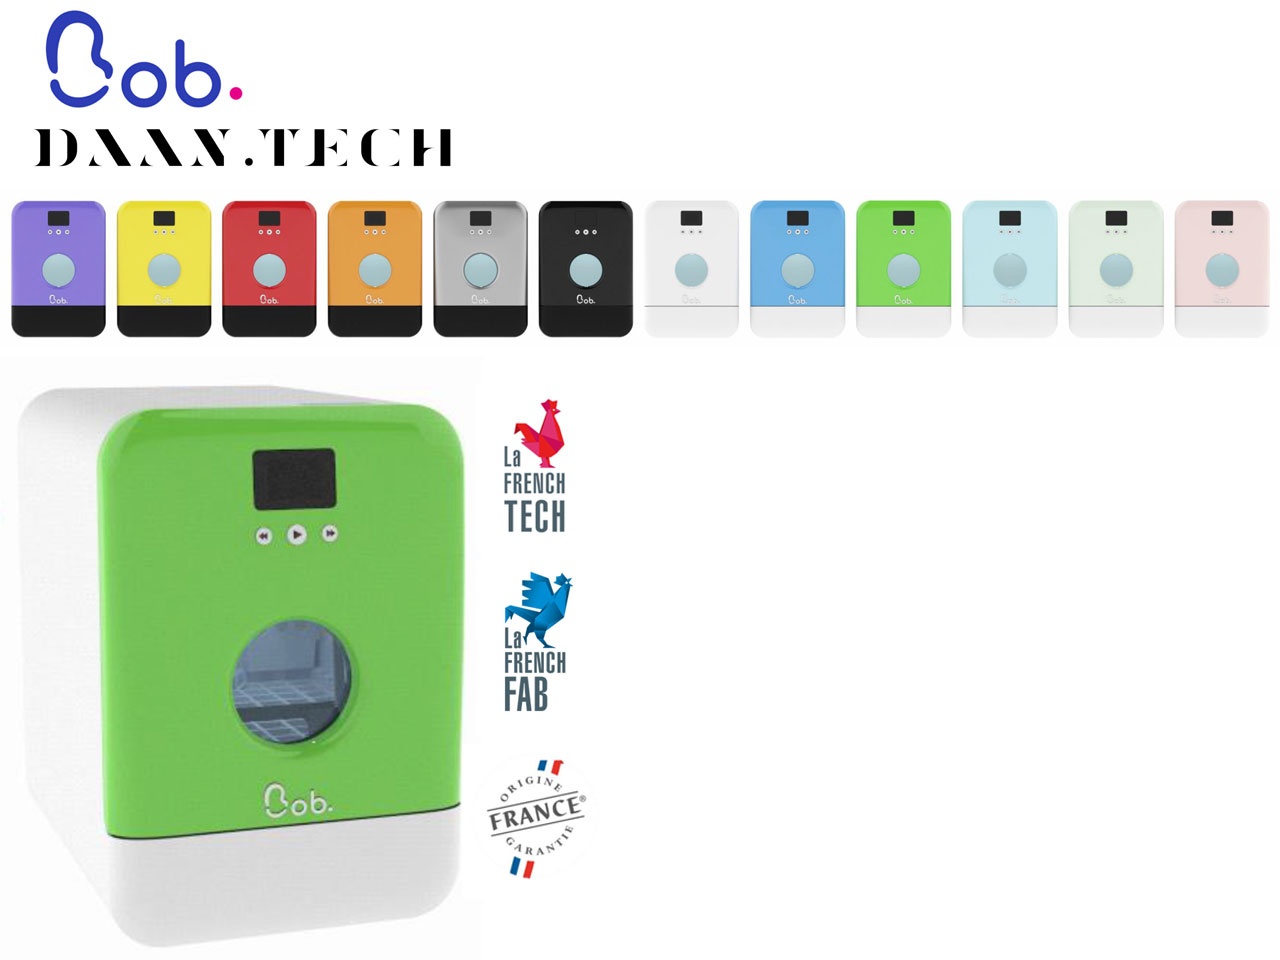 Mini lave-vaisselle autonome Bob (daan.tech.fr) –